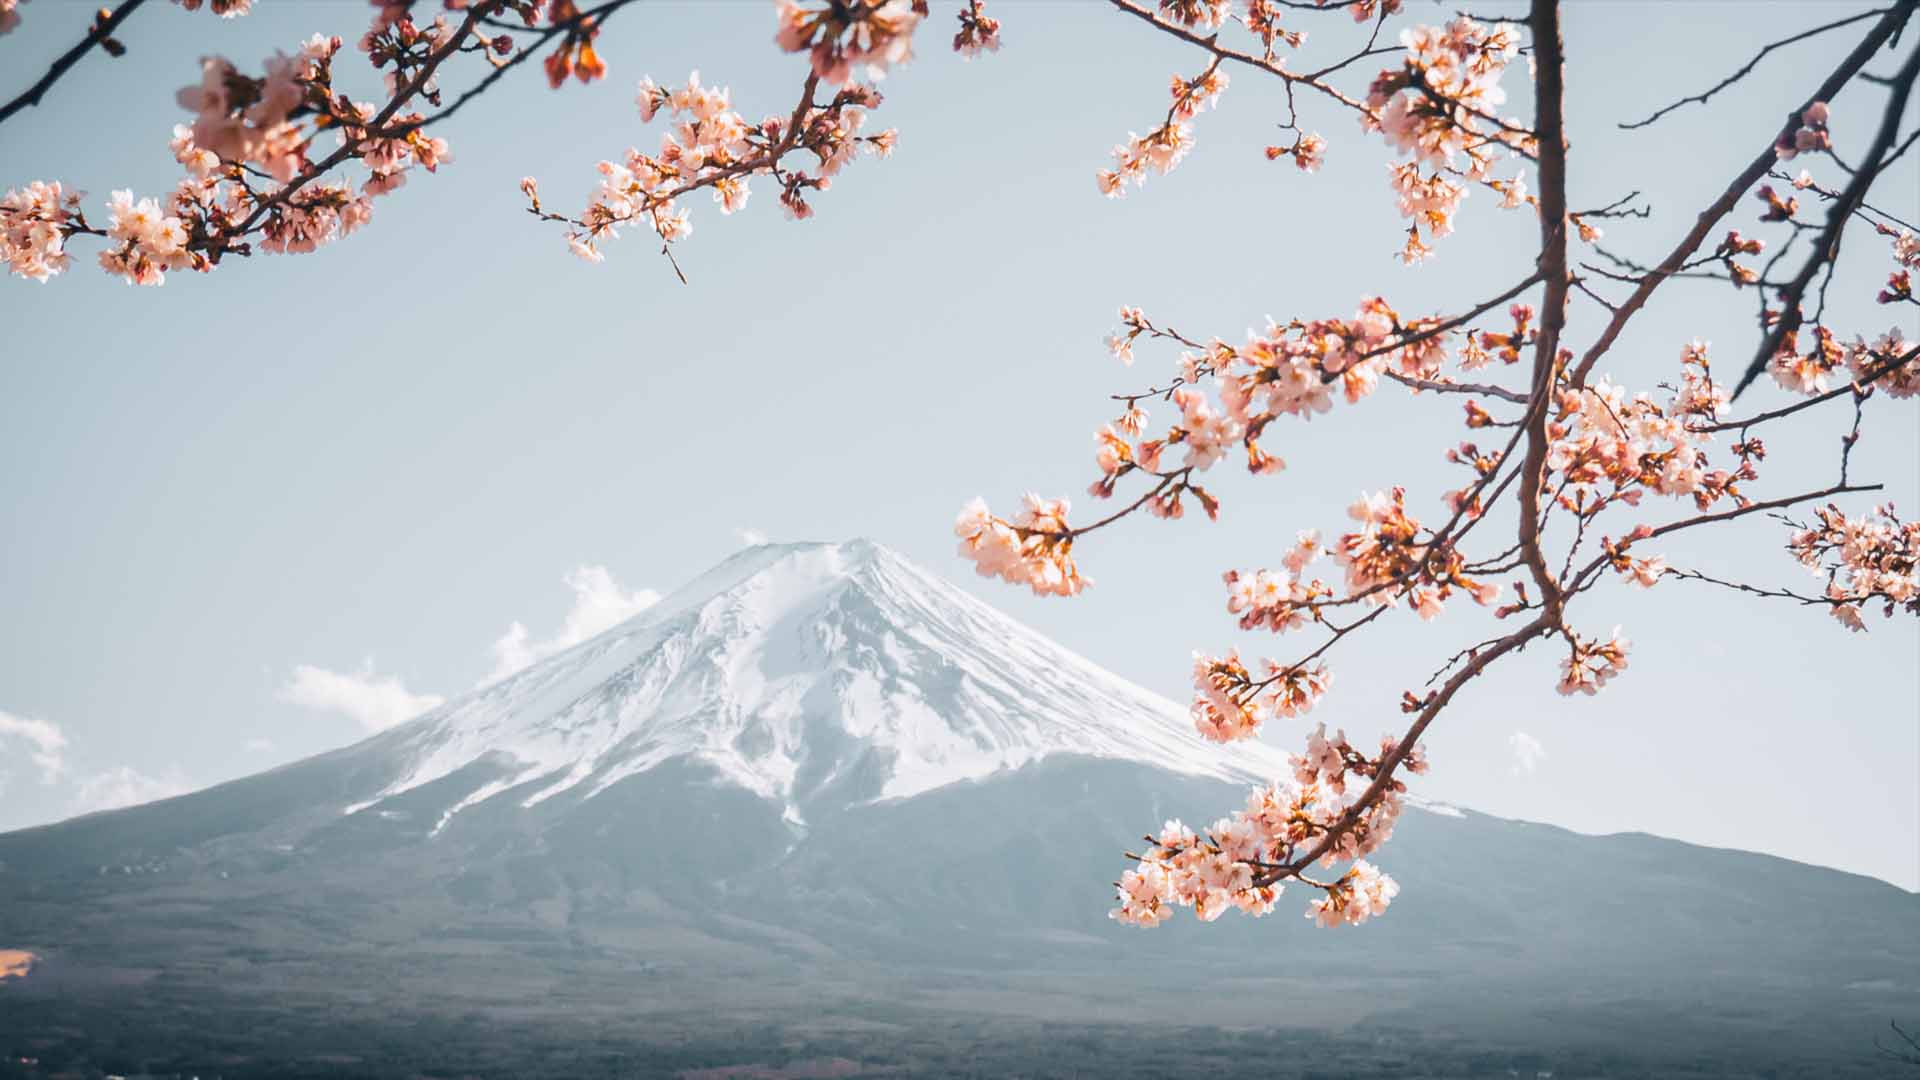 Exposition "36 vues du mont Fuji" à Illzach